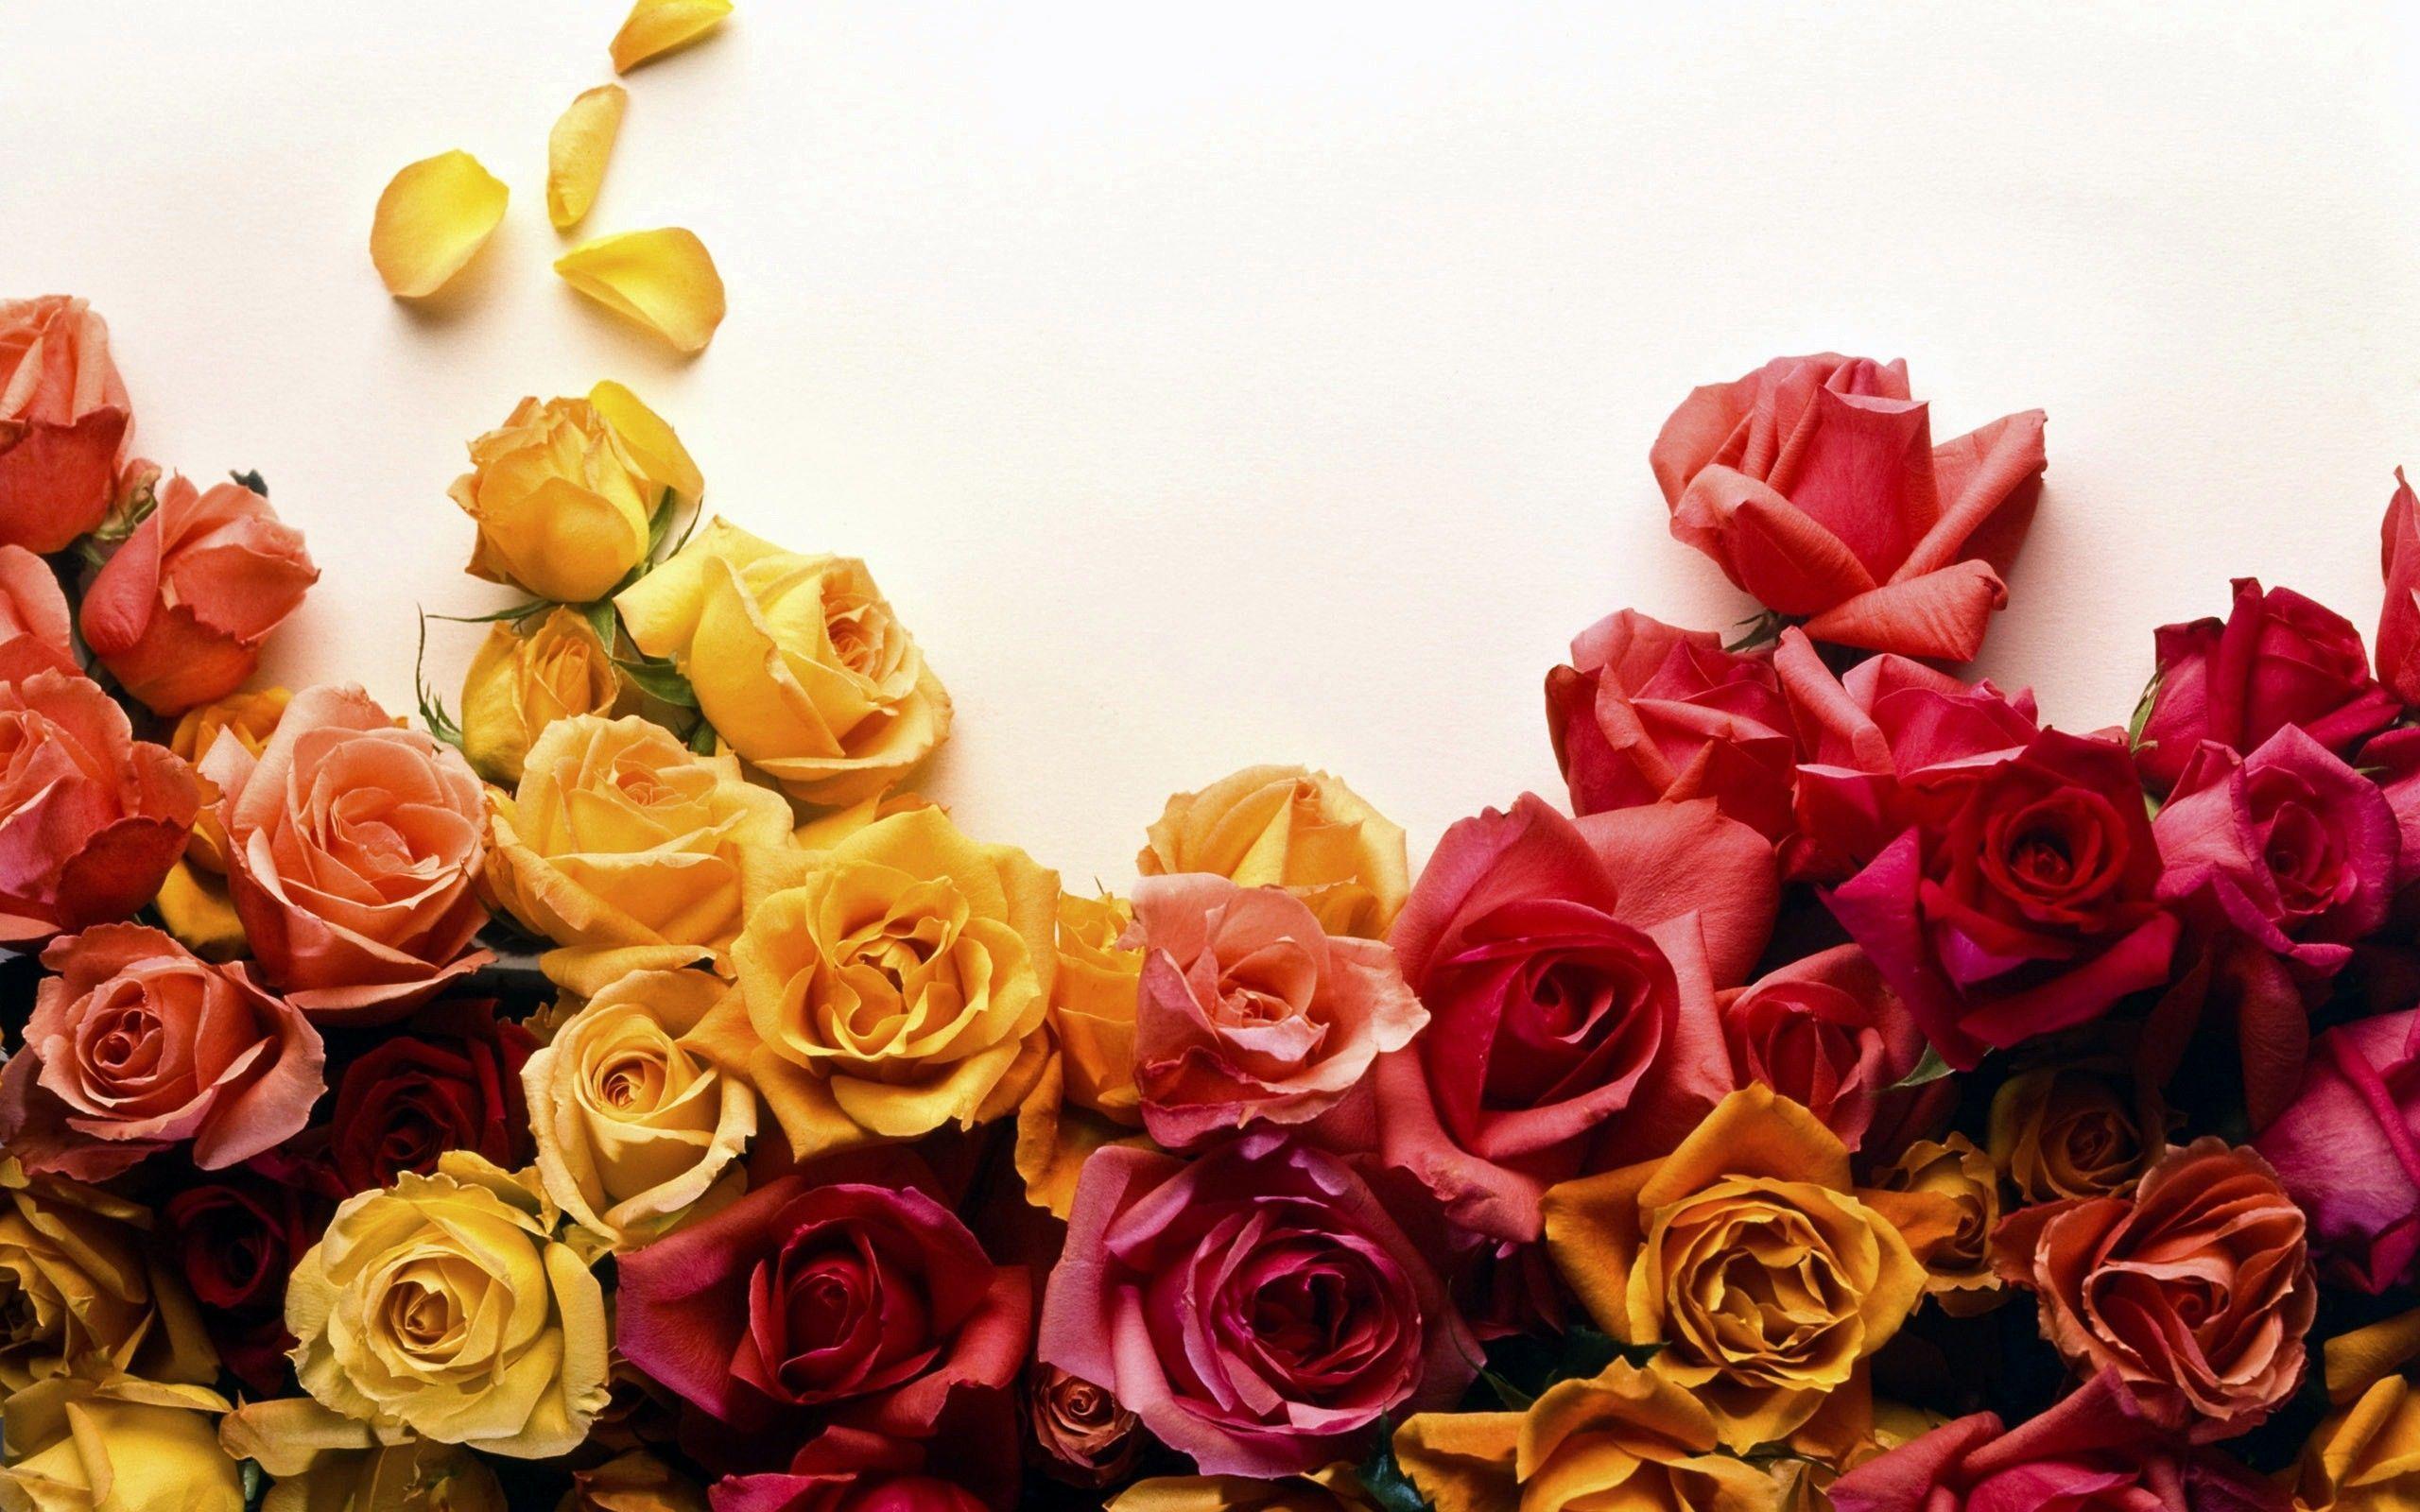 Roses Desktop Wallpaper. Roses Image Free Download